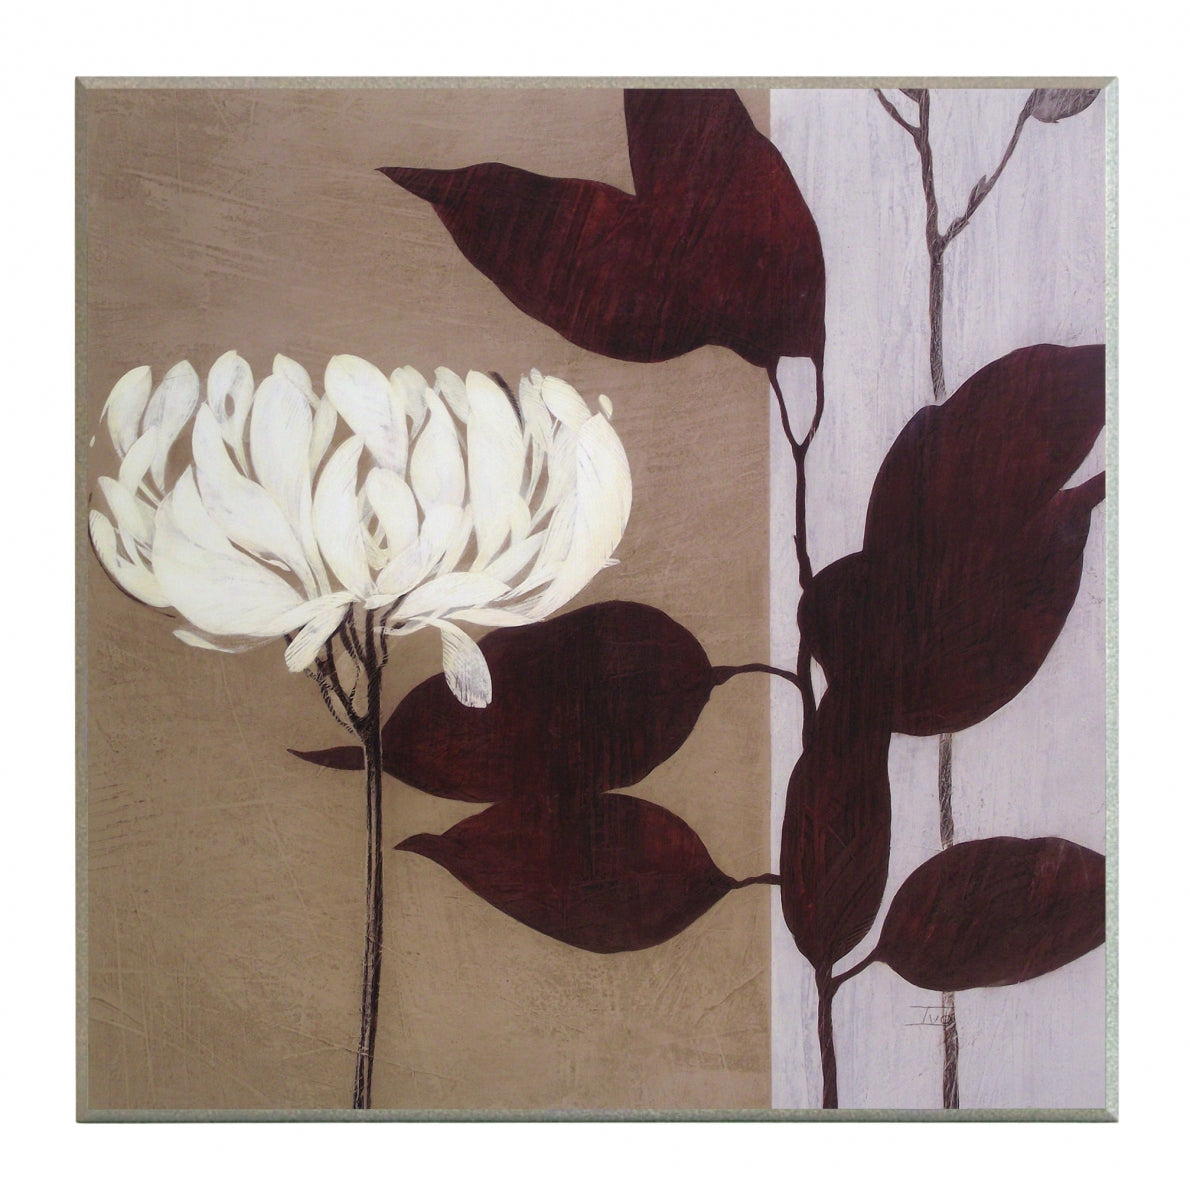 Obraz - Biały kwiat i ciemne liście - reprodukcja na płycie A5989 51x51 cm - Obrazy Reprodukcje Ramy | ergopaul.pl